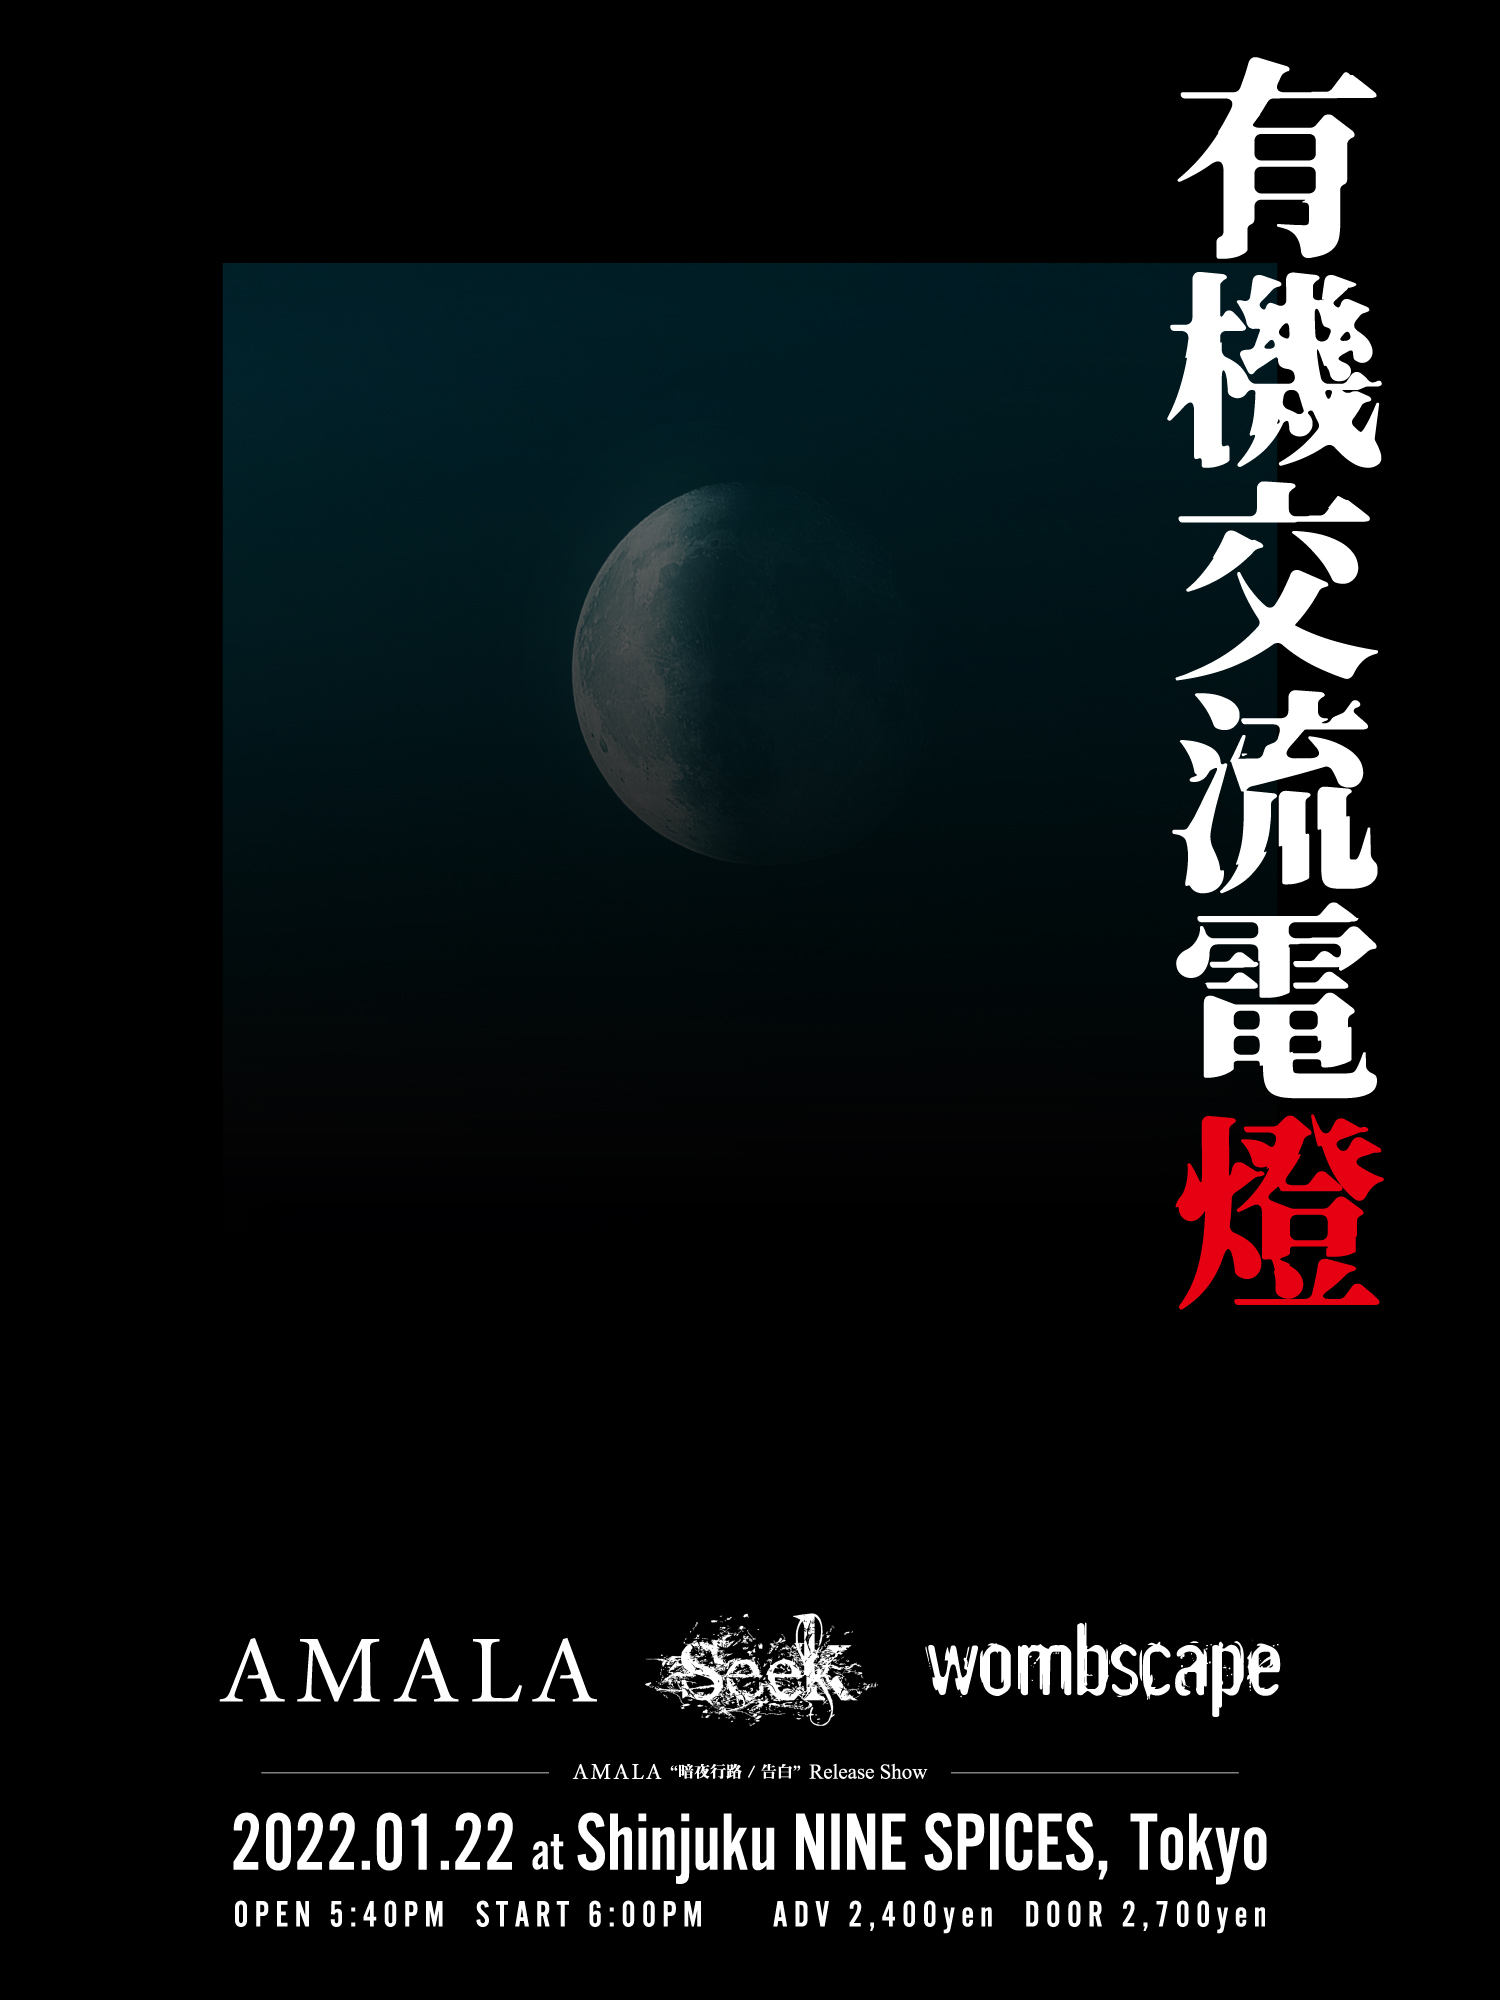 Official Site, Amala